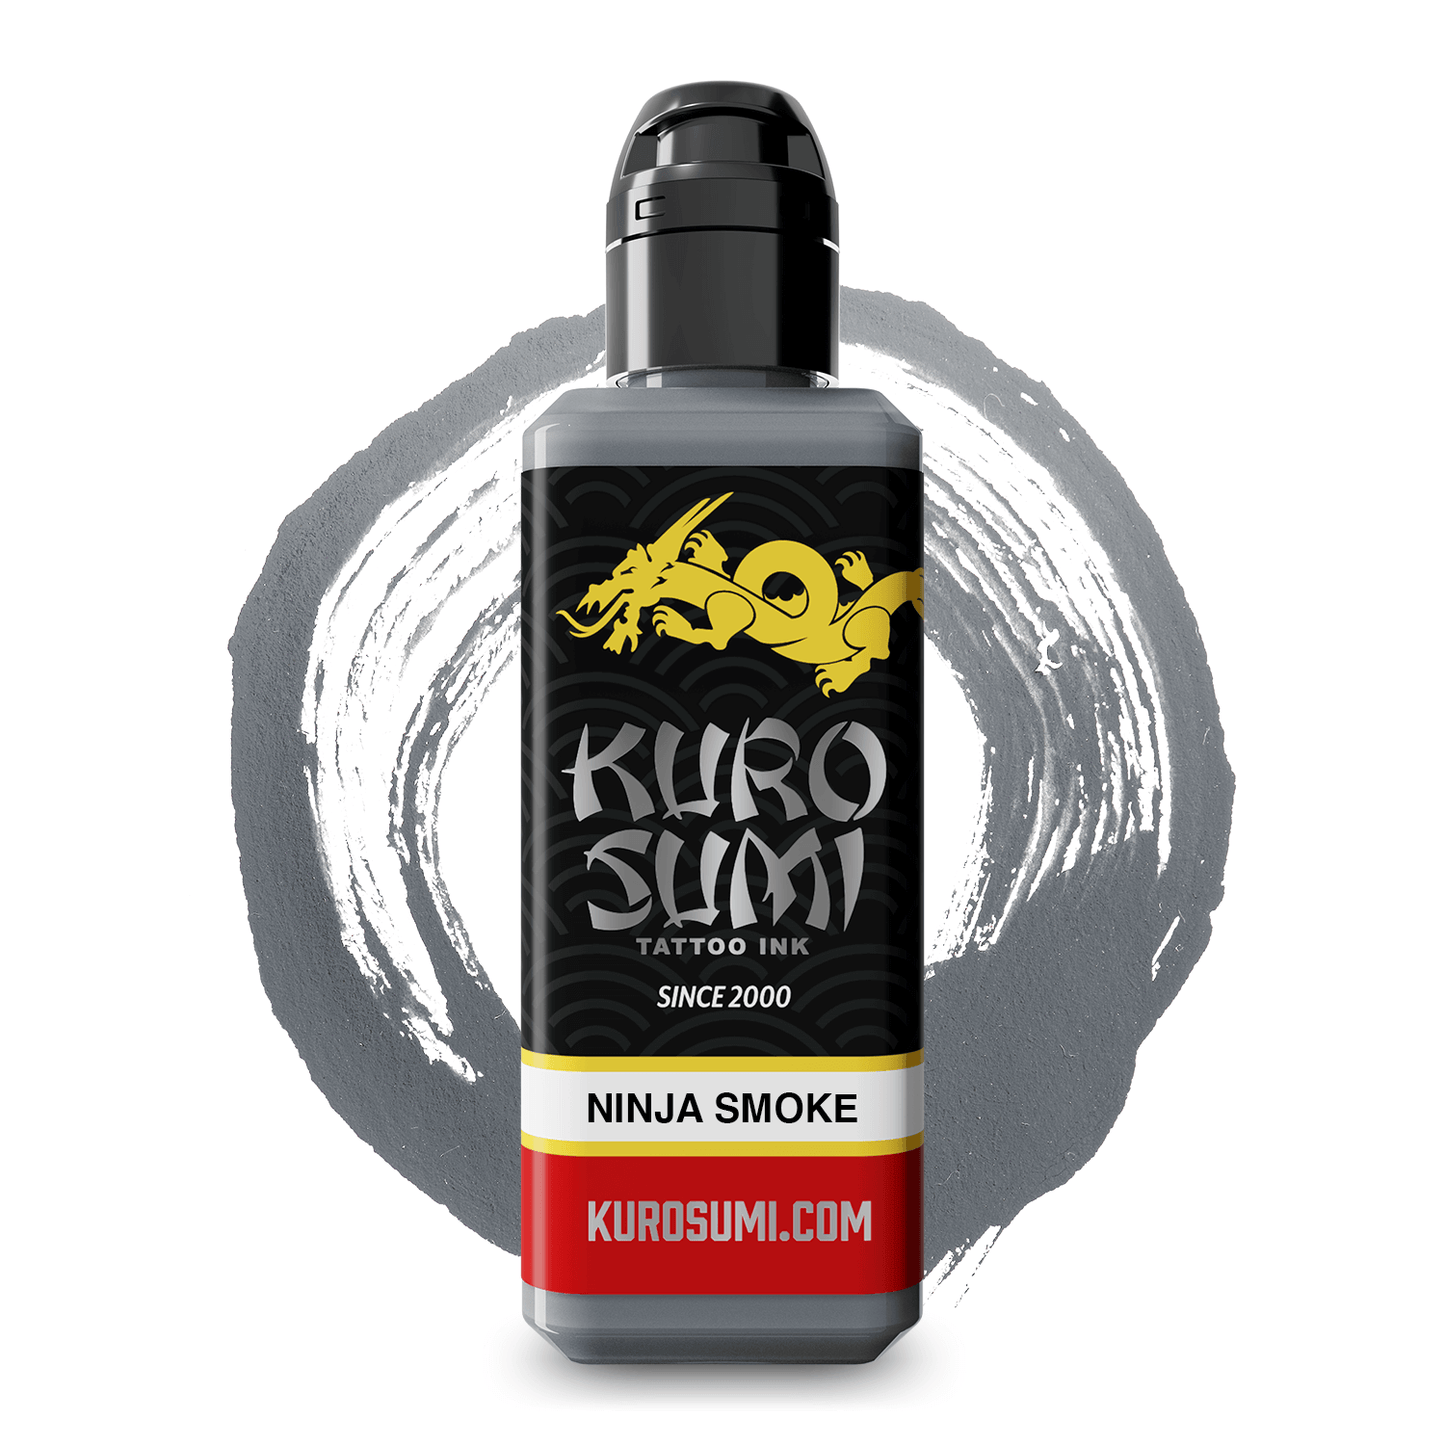 KSNS Kuro Sumi Ninja Smoke 3oz